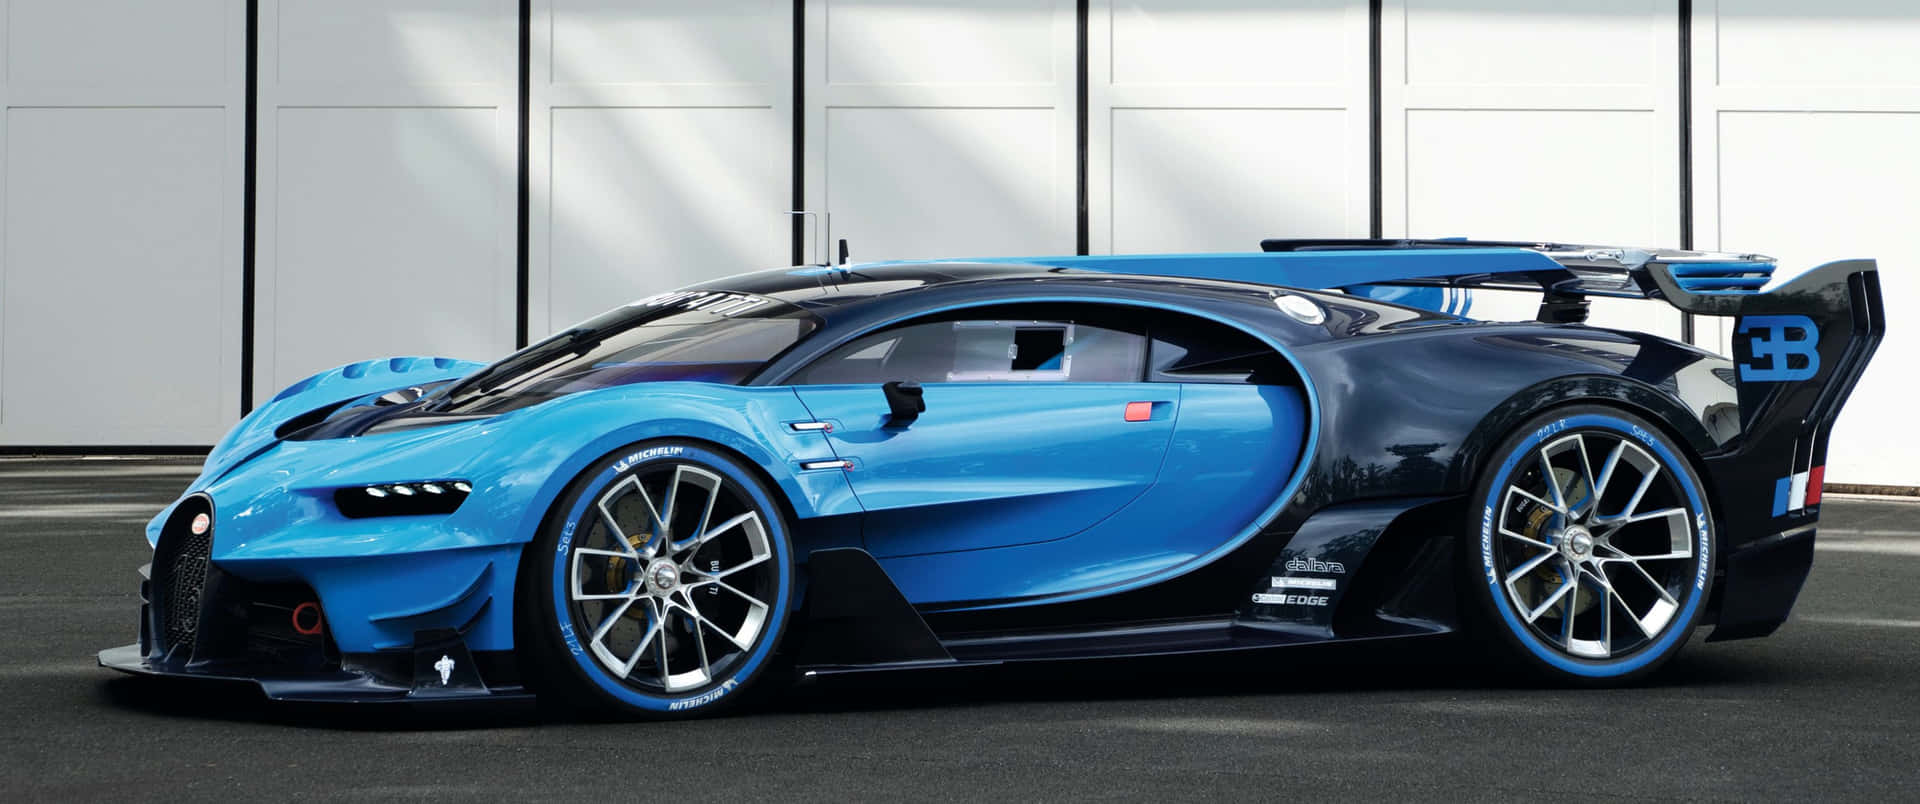 Bugatti Chiron Gt - Concept Car